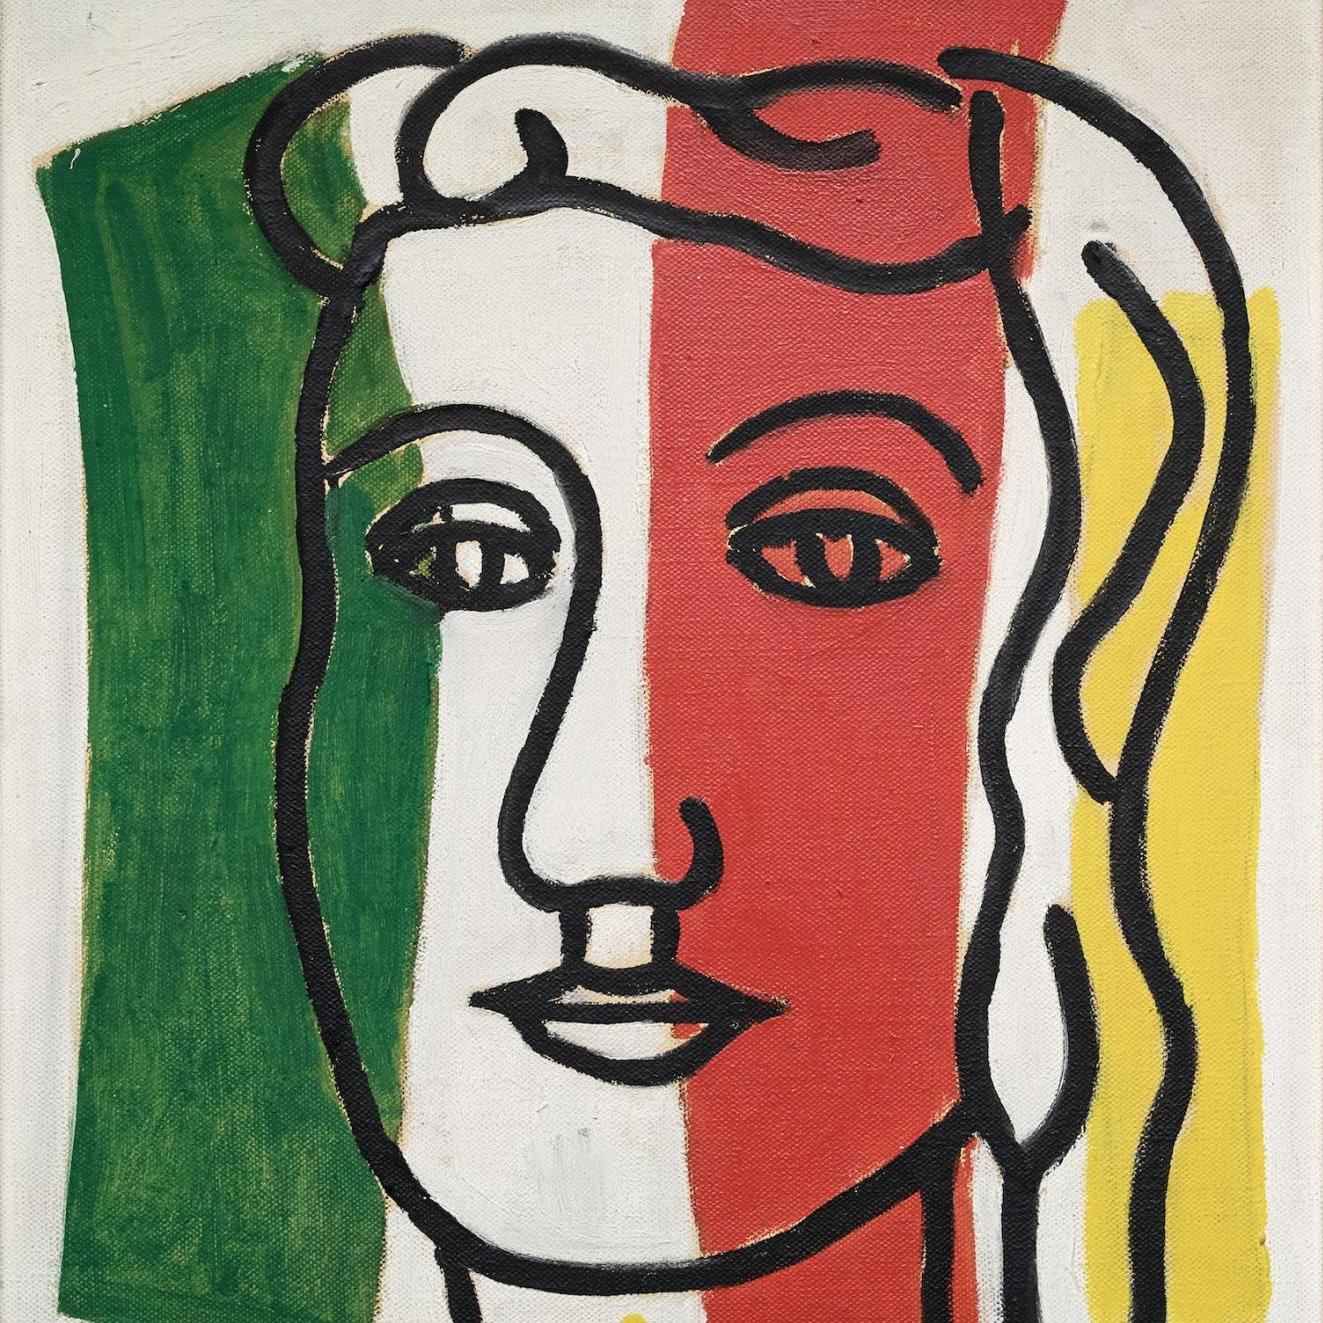 Foires et salons - Fernand Léger en contrastes et en couleurs - Podcast #4